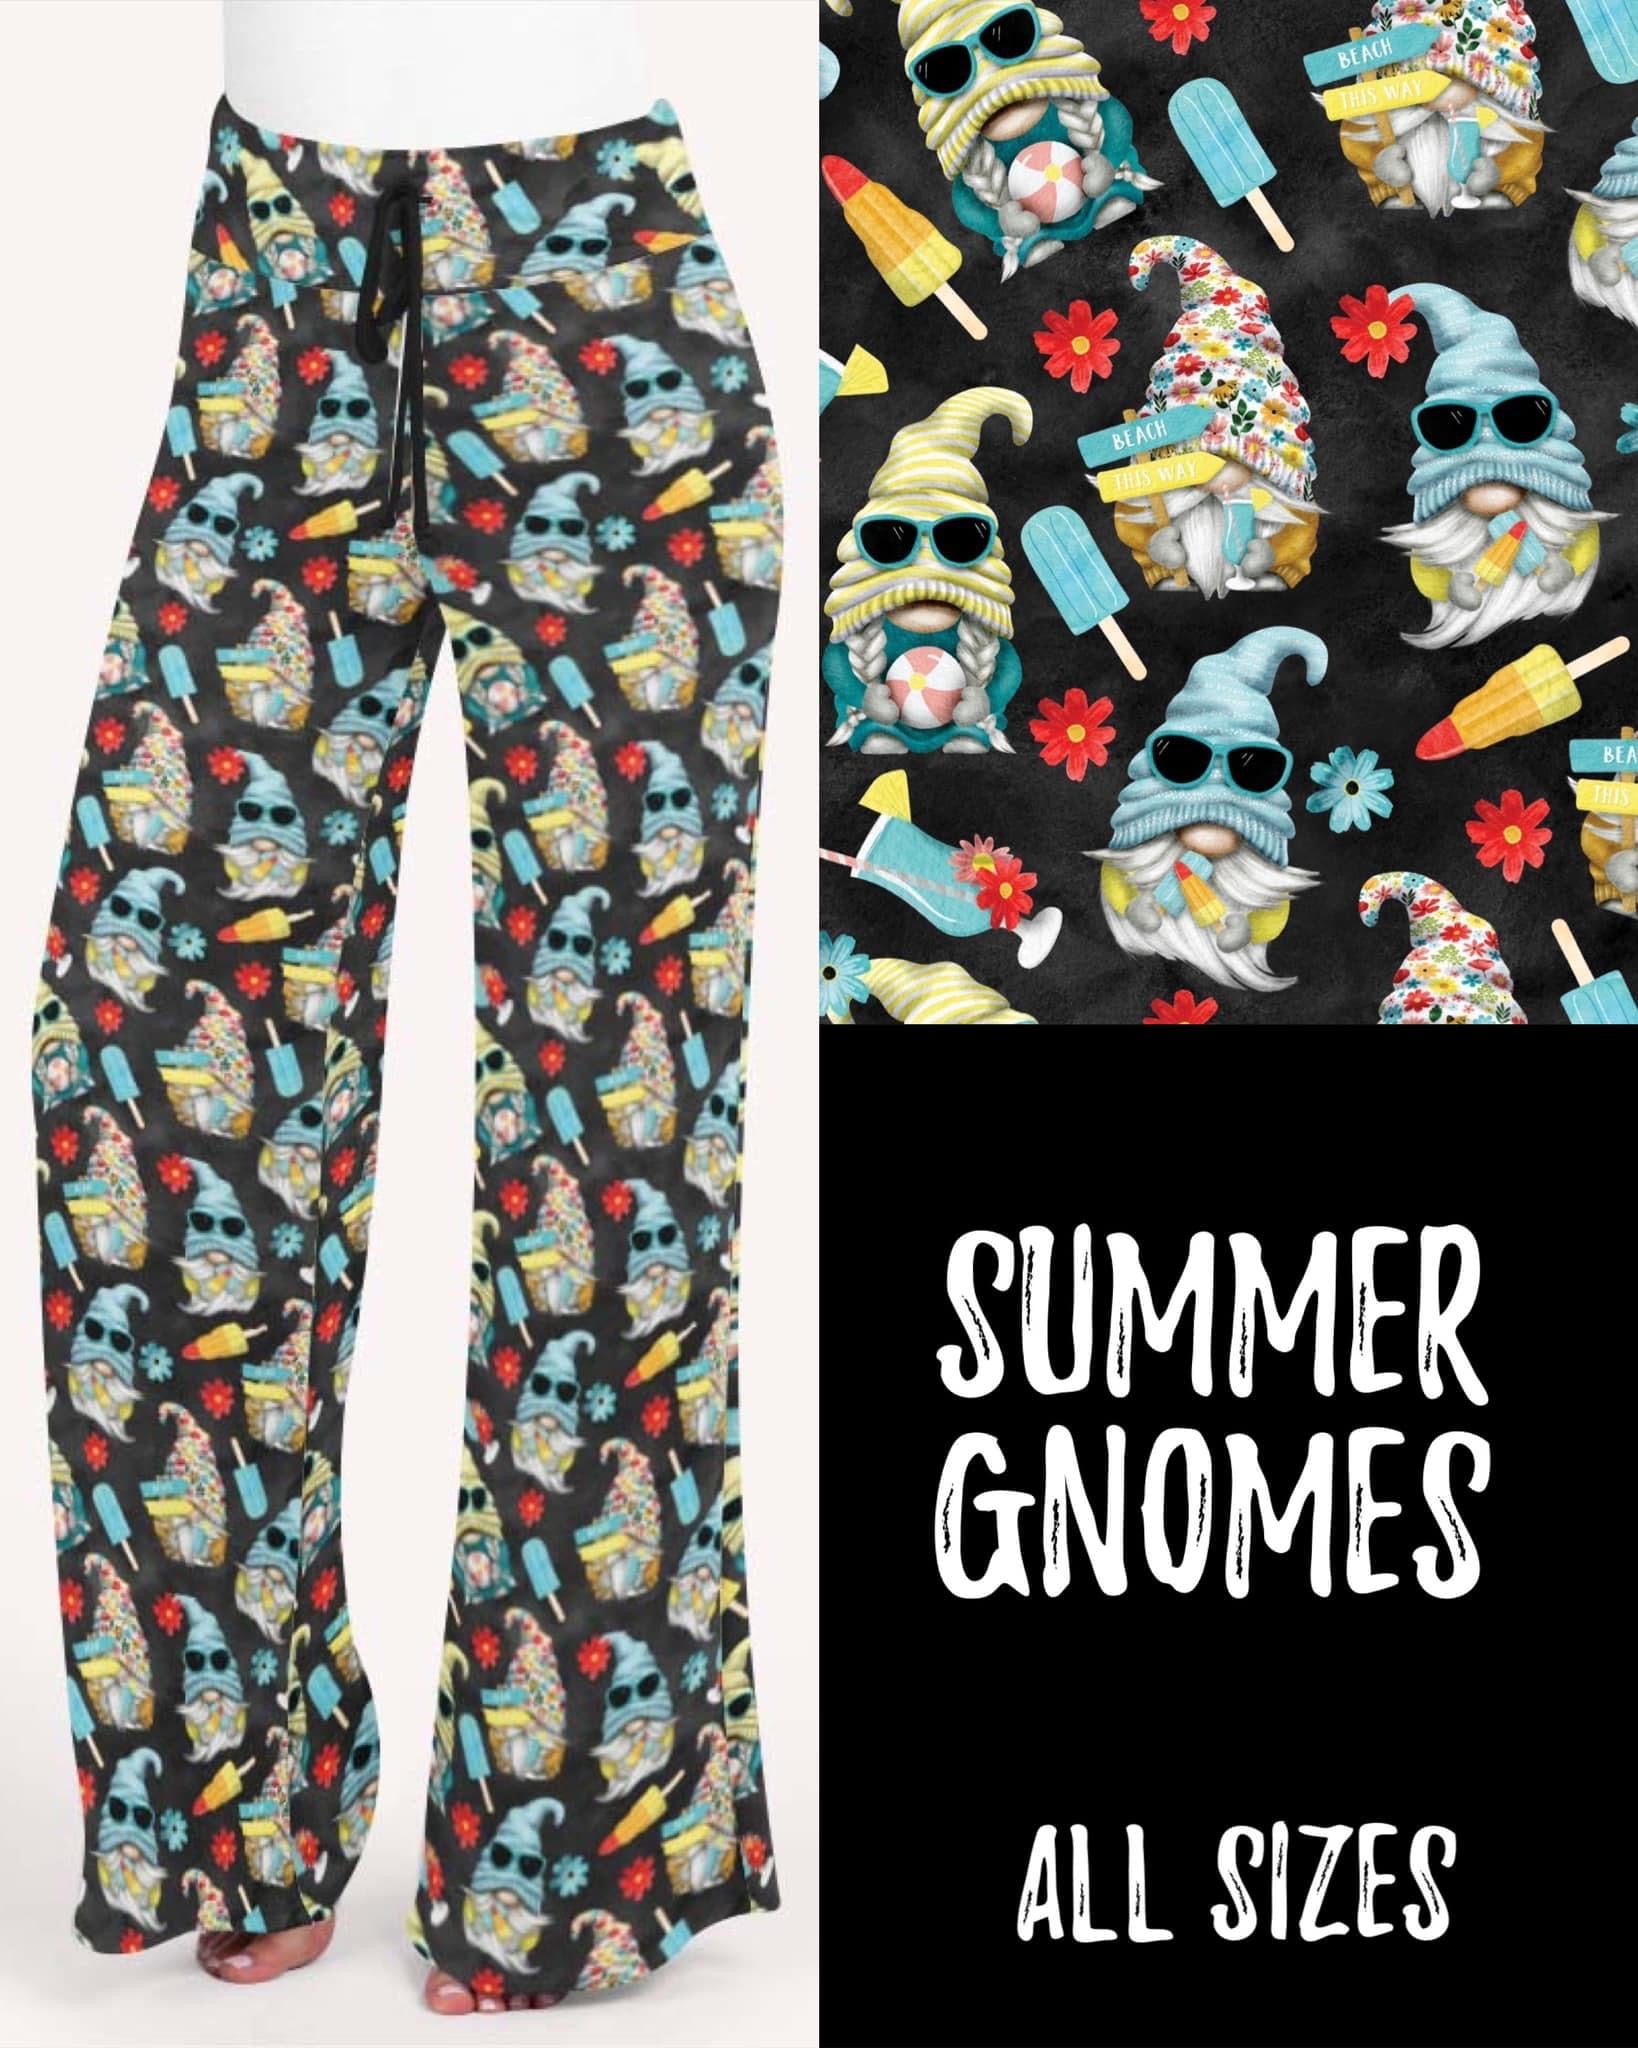 Summer Gnomes Leggings/Capris